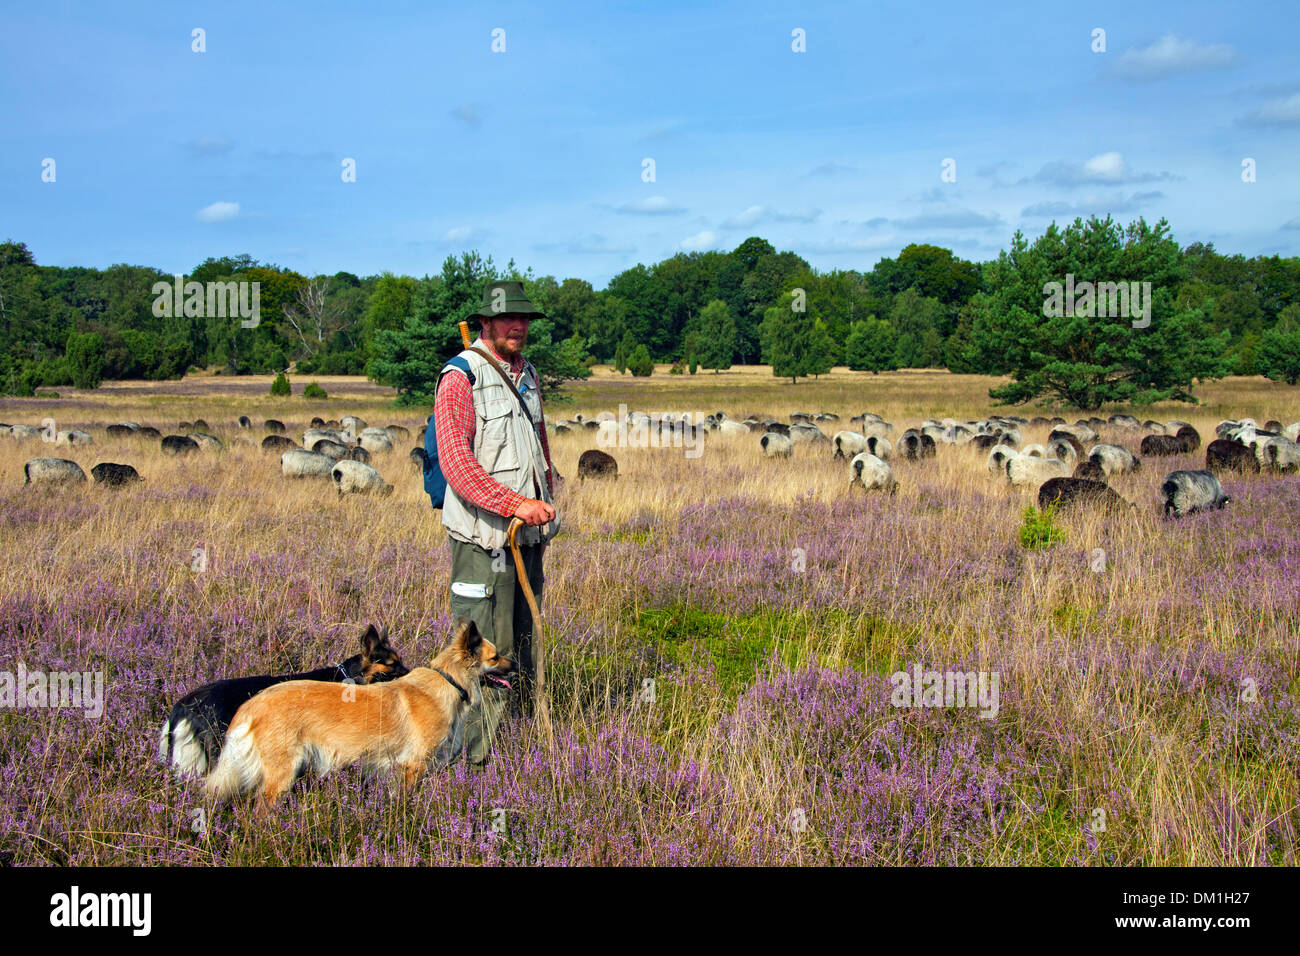 Hirte mit Hütehunde Hüten der Herde von Heidschnucke, Heide Schafe am Lüneburg Heath / Lunenburg Heathland im Sommer, Deutschland Stockfoto